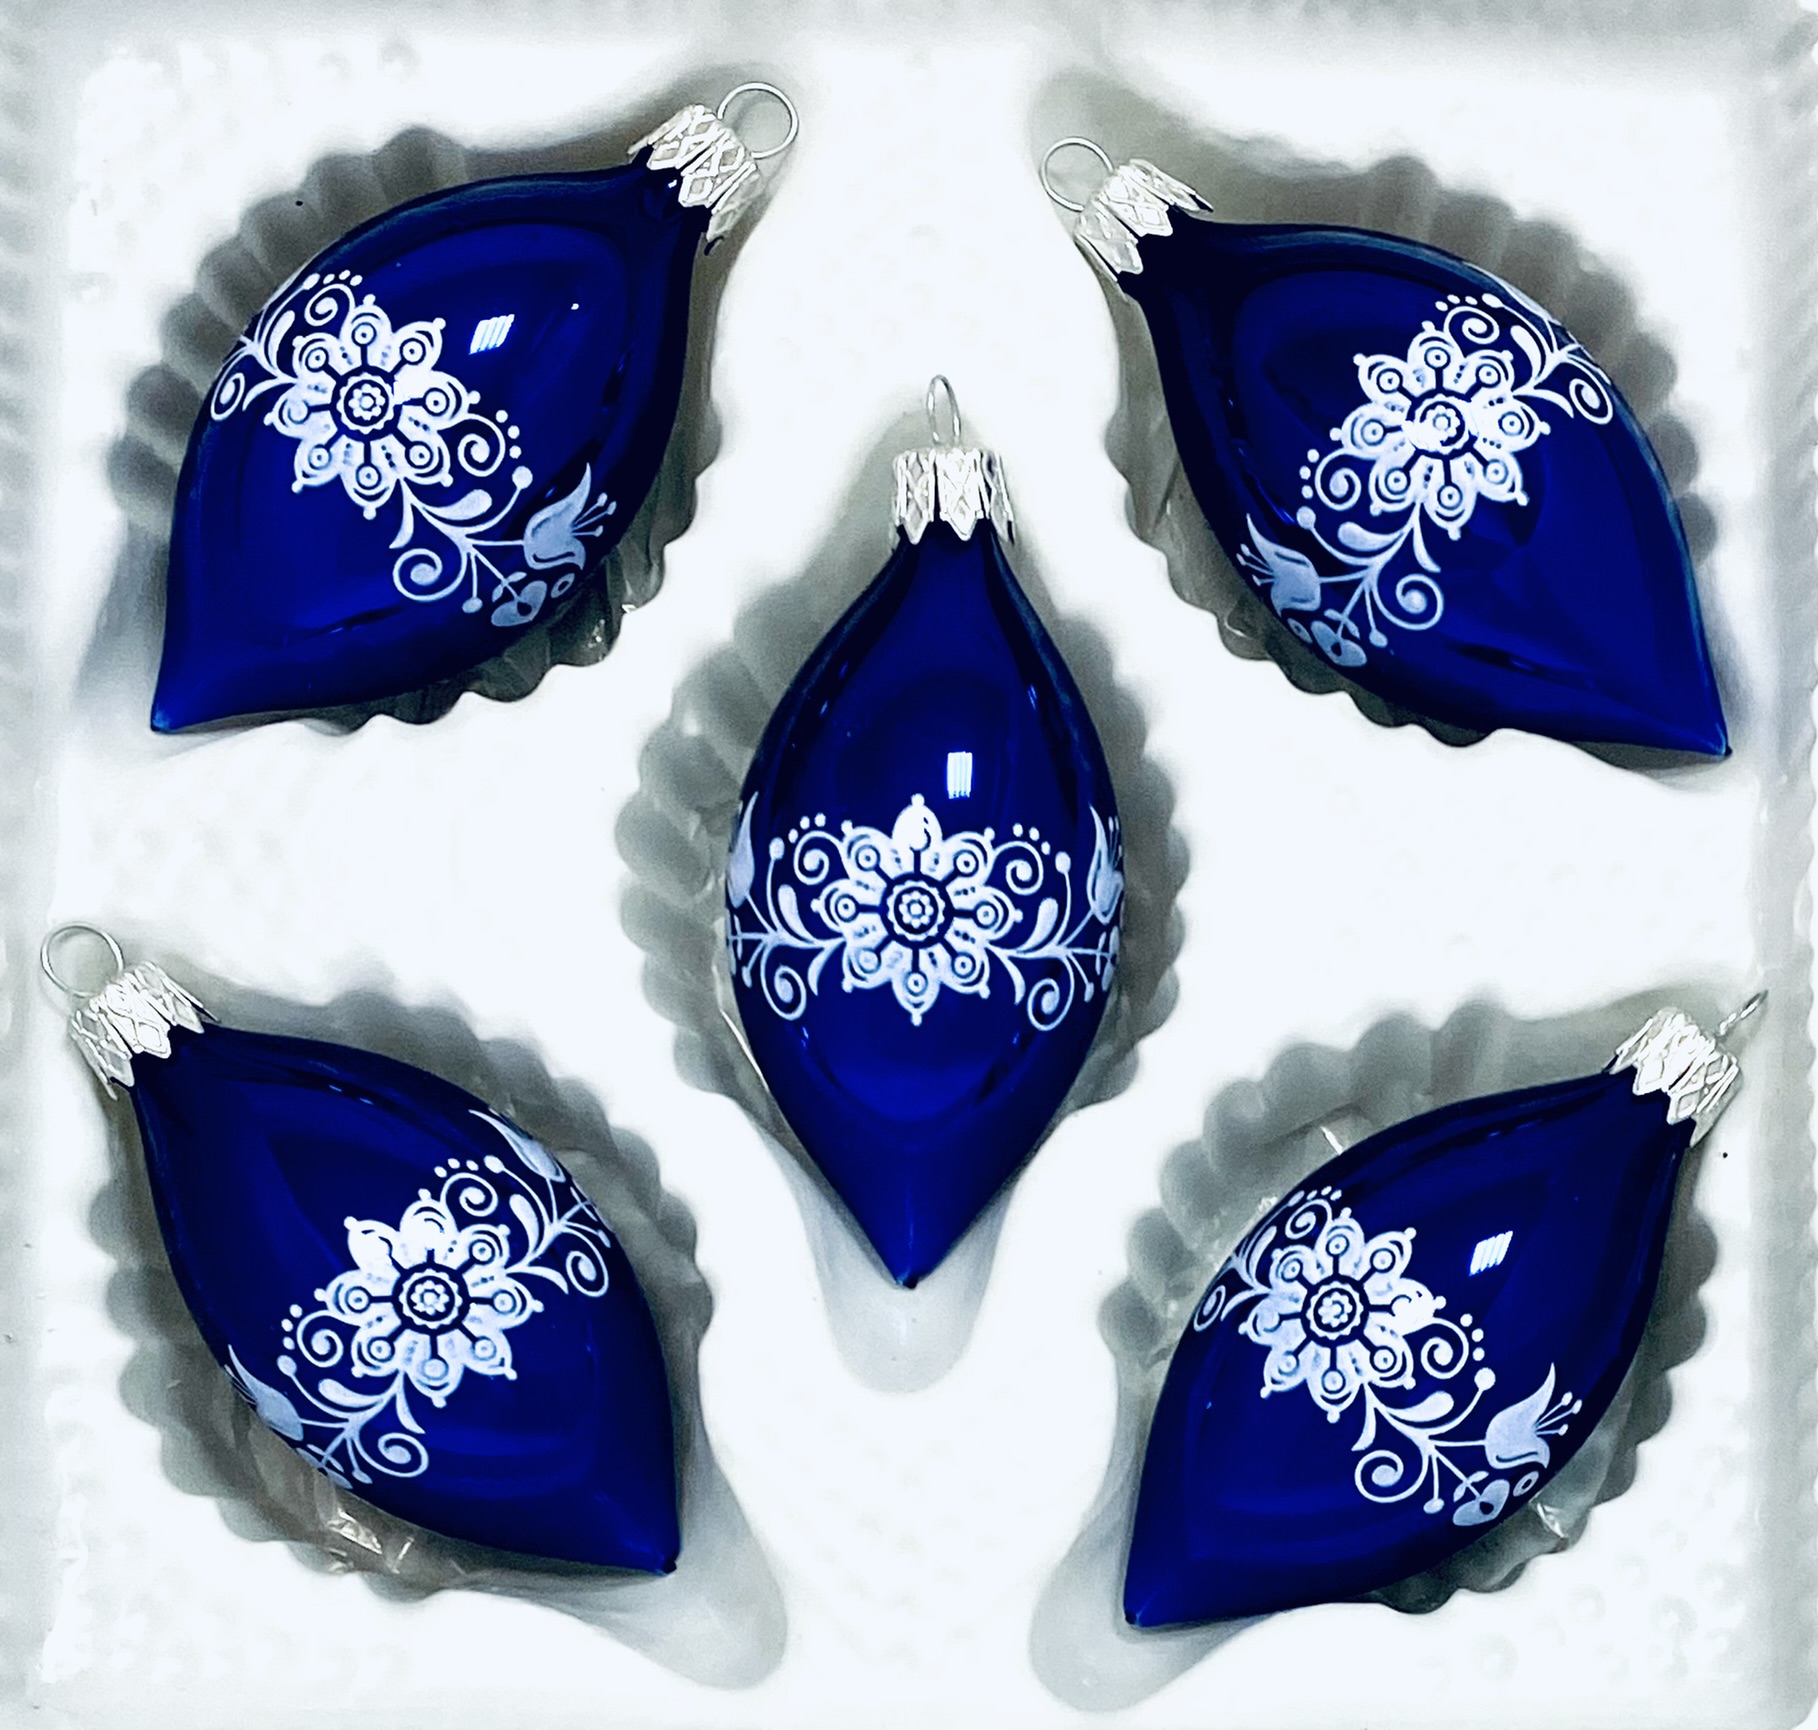 Irisa Vánoční ozdoby ALICE modrá oliva s dekorem cibulák 8 cm, 5 ks Balení: 5ks, Barva: modrá, Velikost: 8 cm